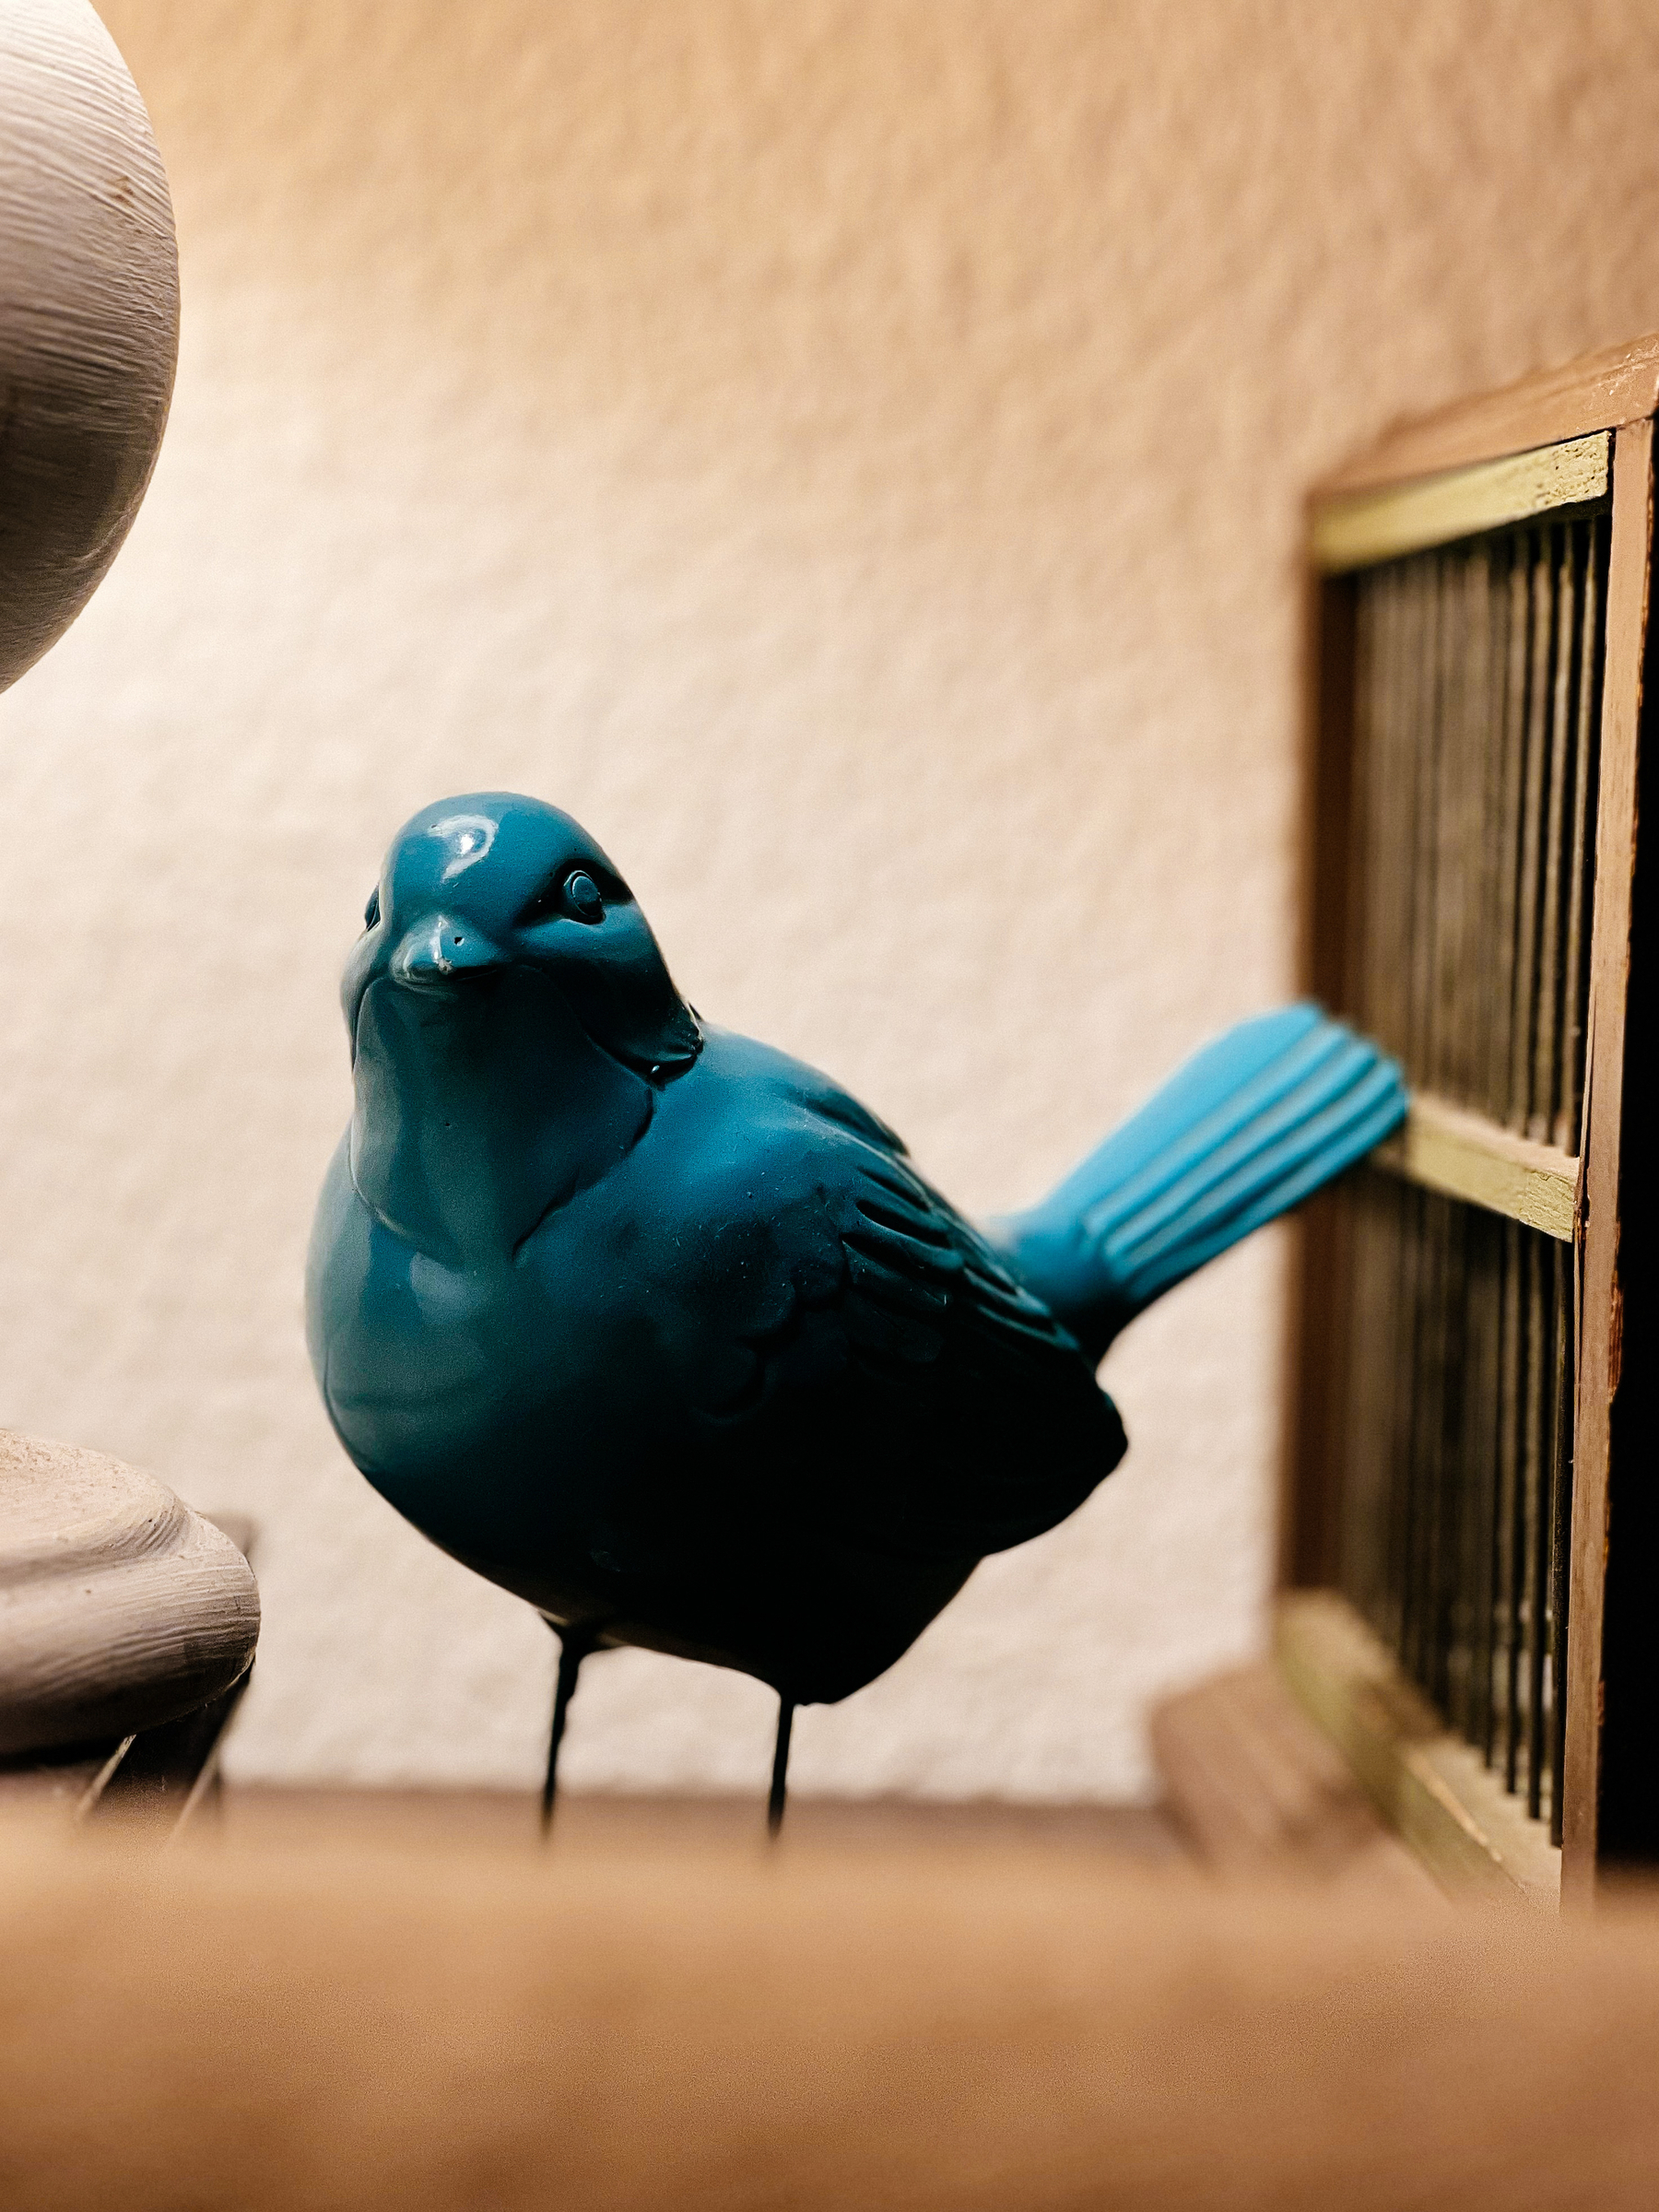 A blue ceramic bird.